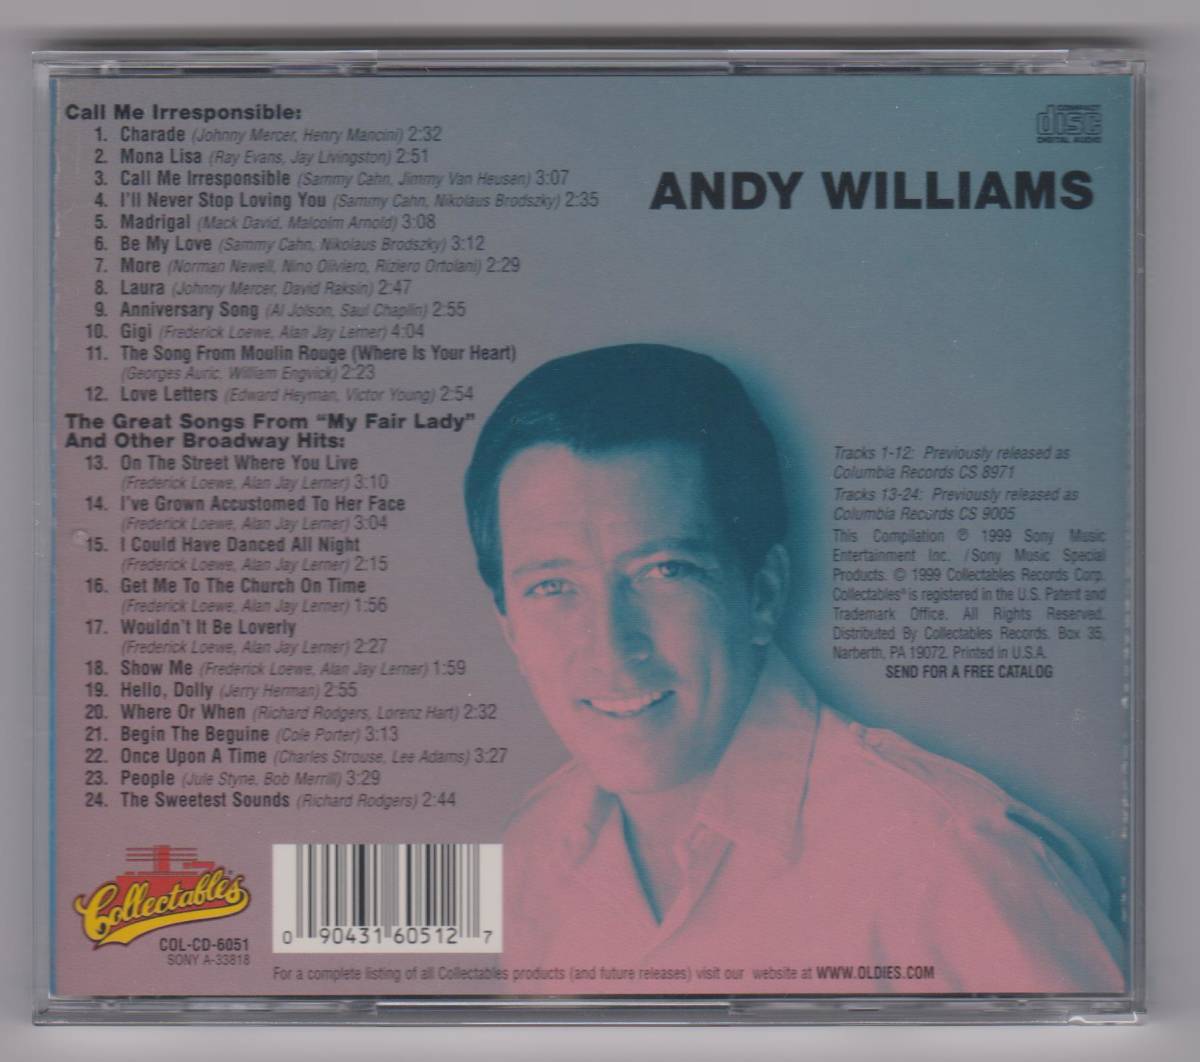 【新品/輸入盤CD】ANDY WILLIAMS/Call Me Irresponsible & The Great Songs From "My Fair Lady" And Other Broadway Hits_(出品商品はシールド状態です)